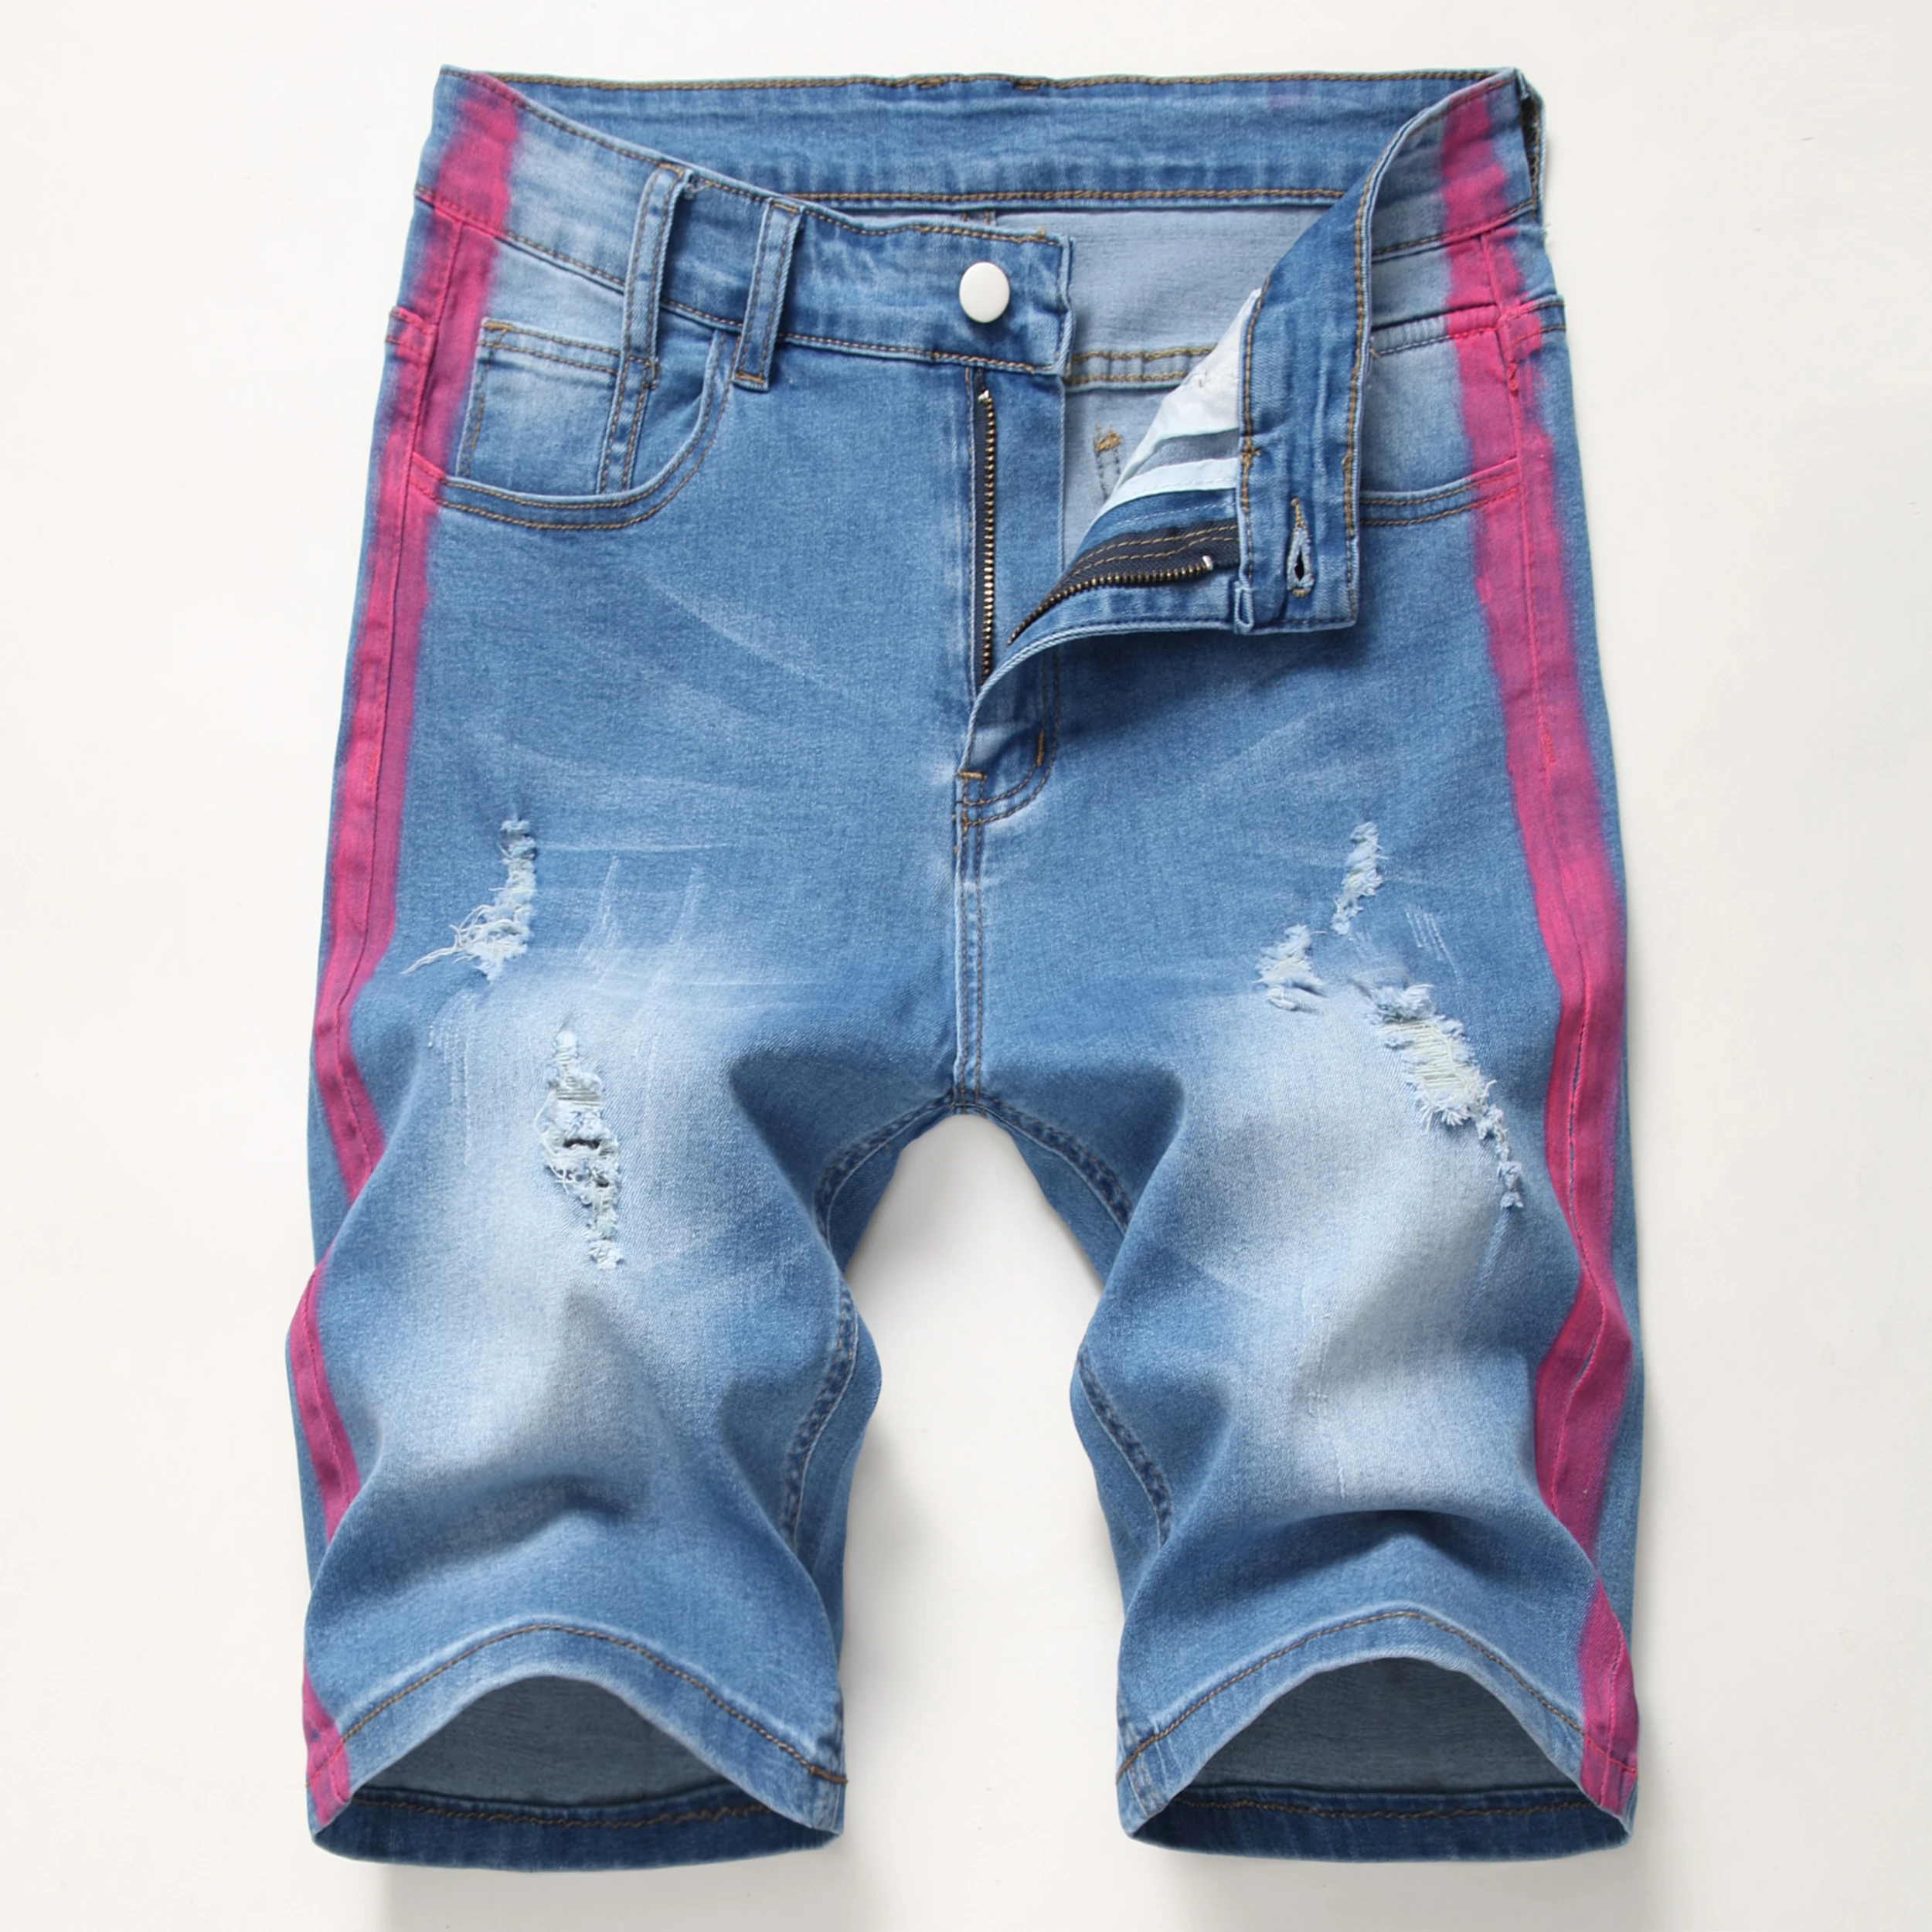 Новинка 2021 г., индивидуальные джинсовые Стрейчевые штаны с популярным логотипом, 4 цвета, модные мужские джинсовые шорты, джинсовые мужские ...